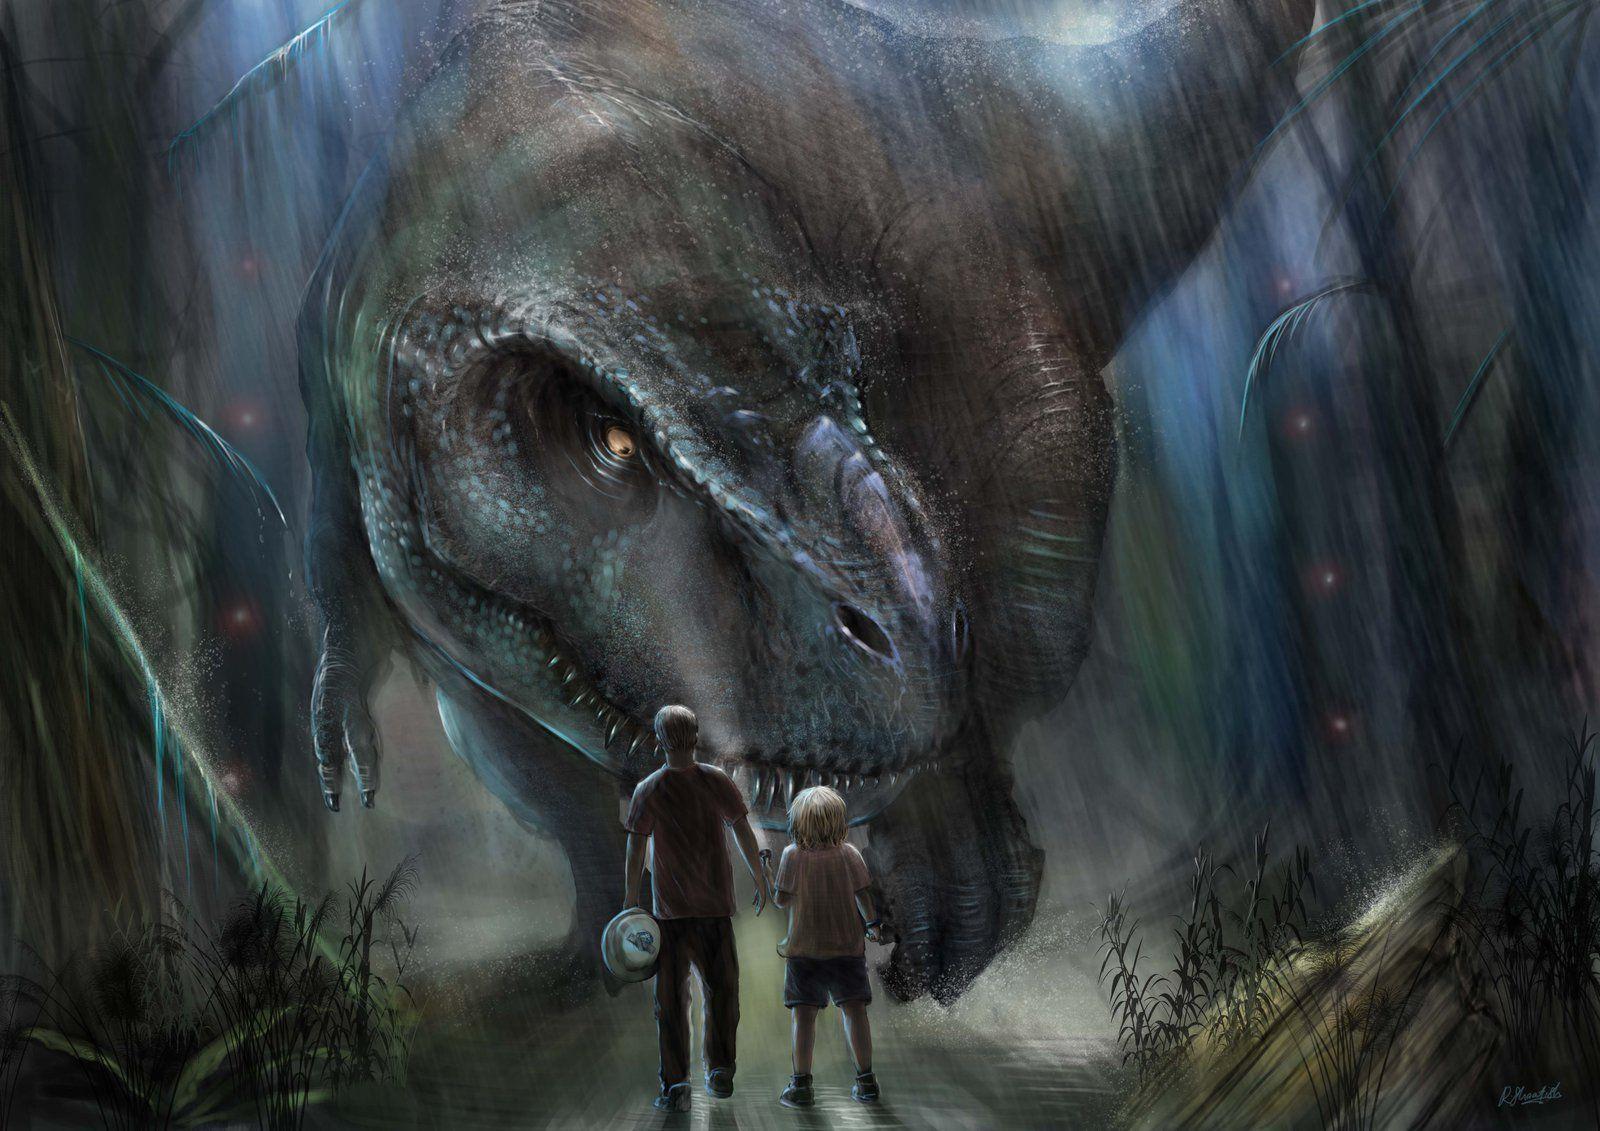 Art. Finds A Way: Best 'Jurassic World' Fan Art Ever